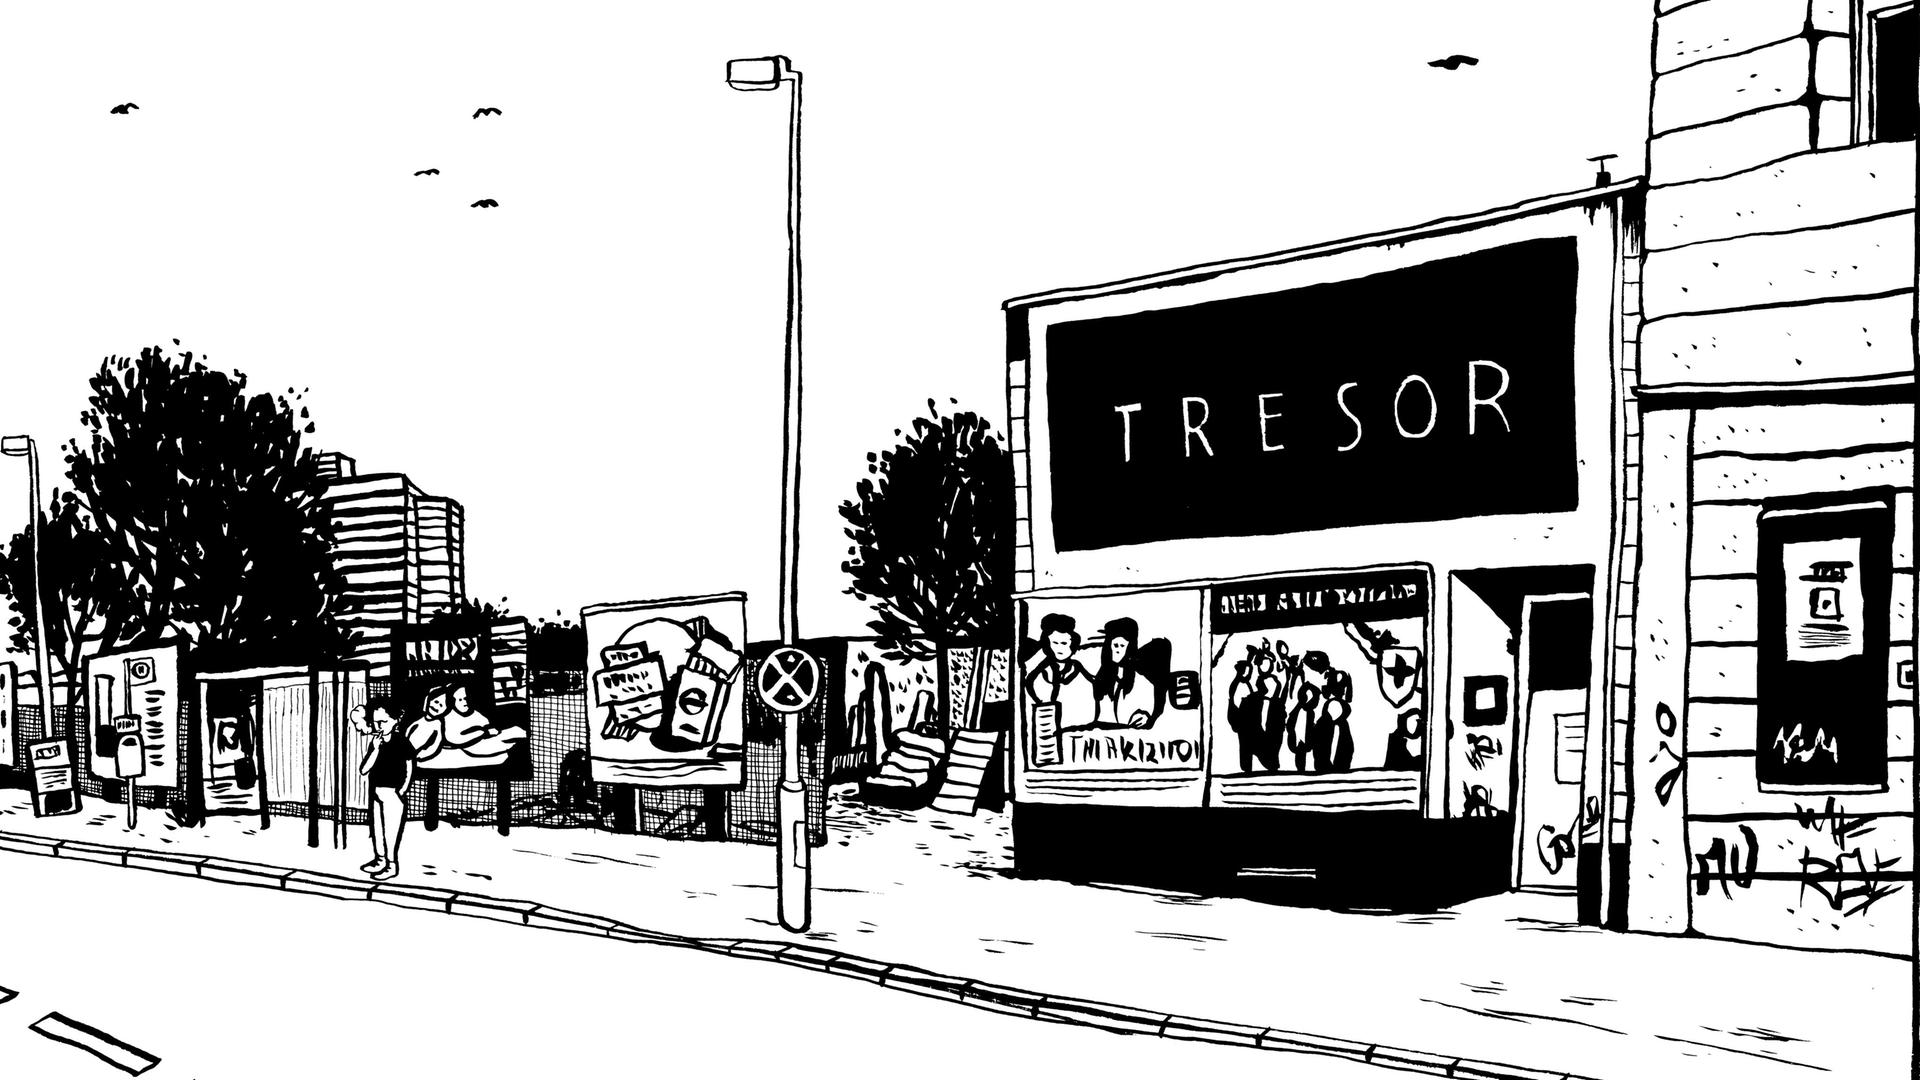 Zeichnung des legendären Clubs Tresor in Berlin von Tine Fetz 